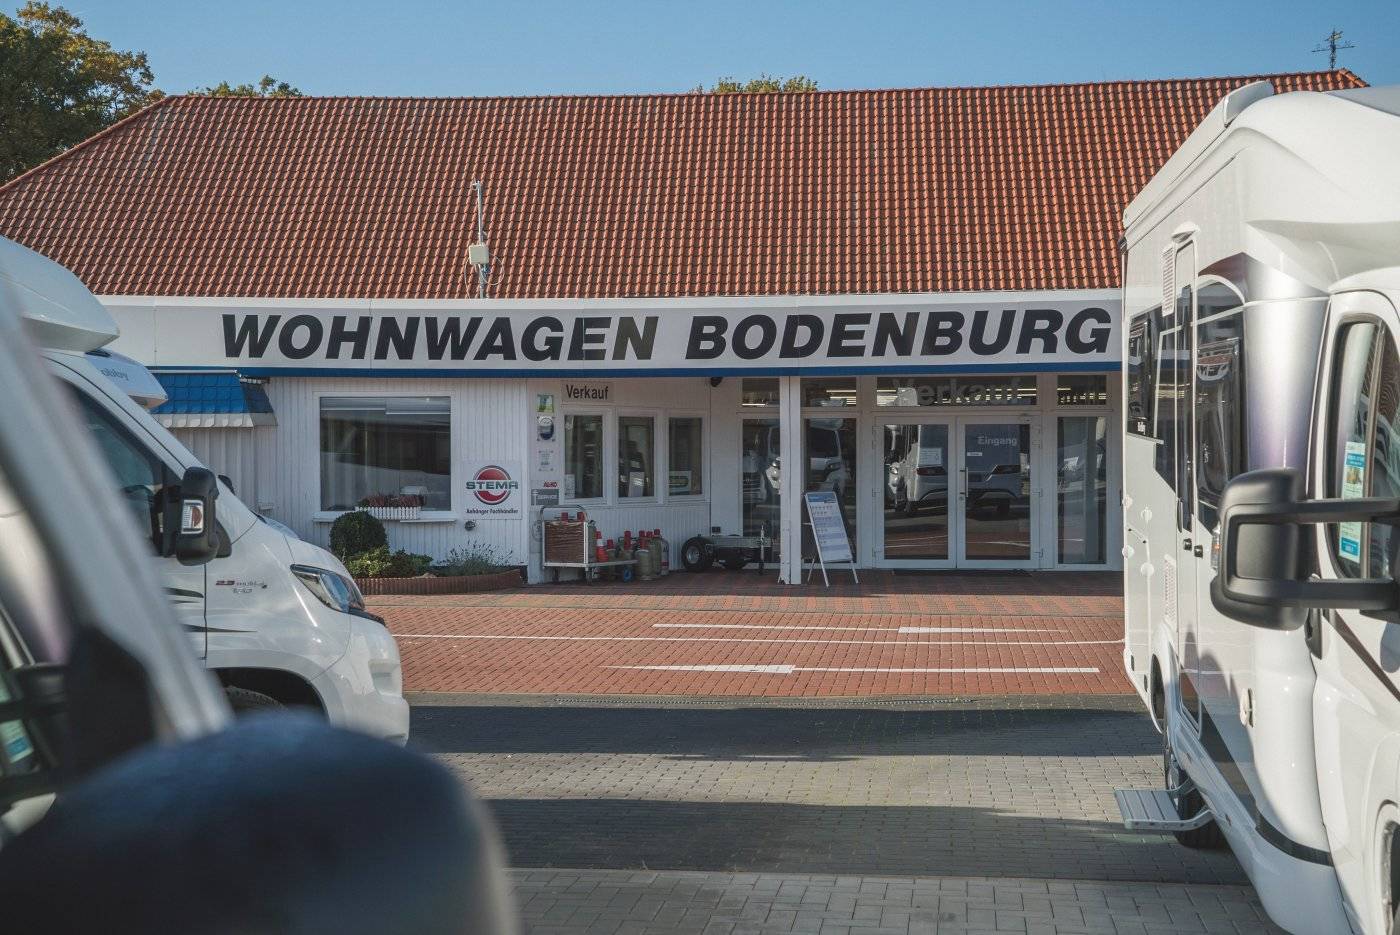 (c) Wohnwagen-bodenburg.de